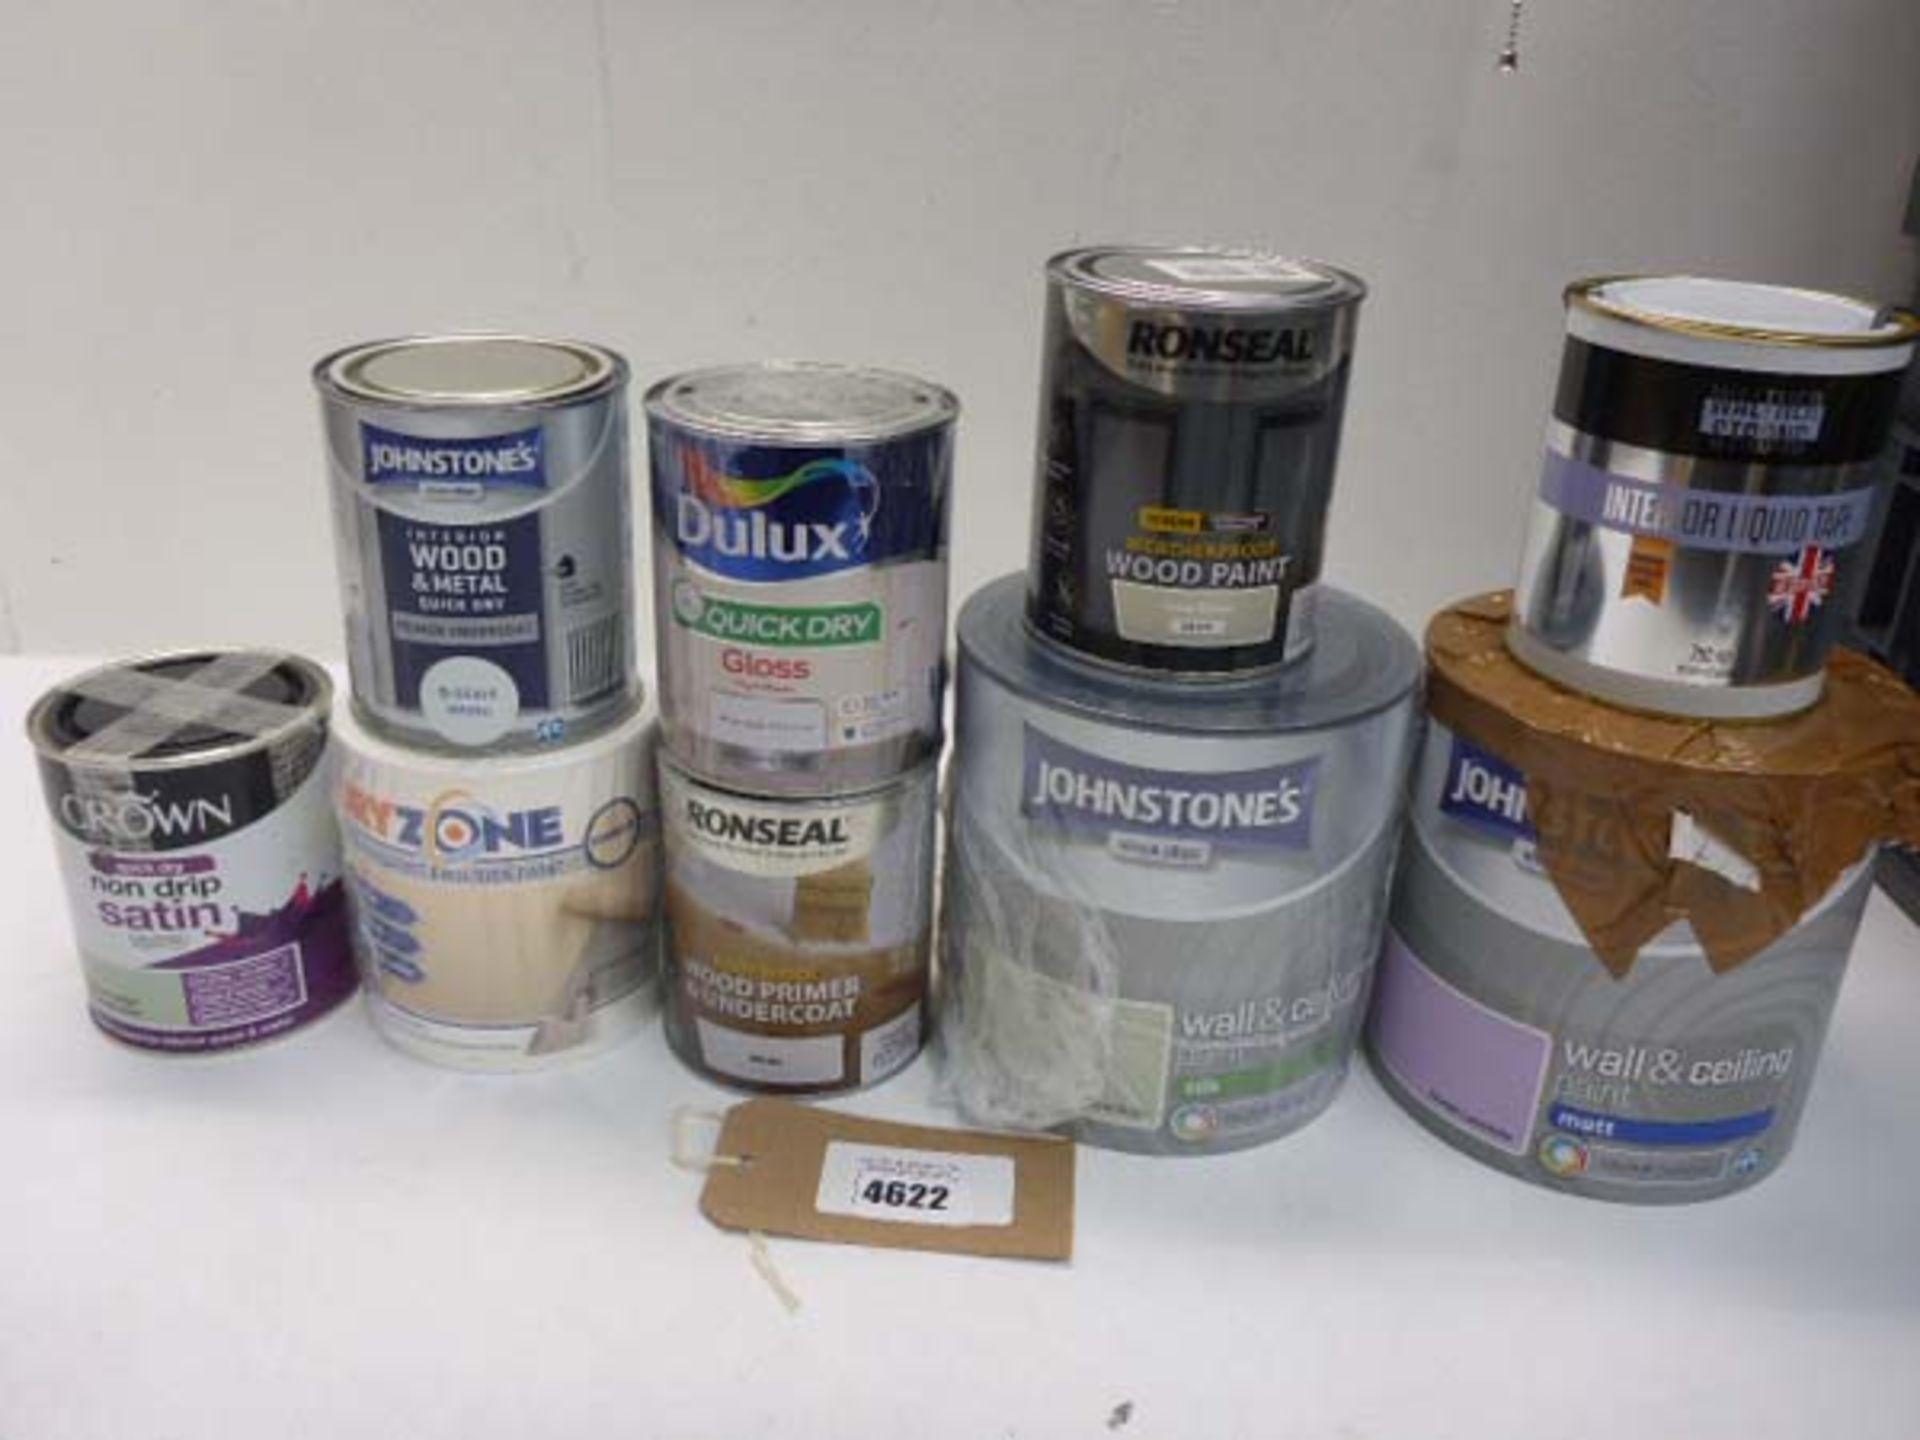 Selection of wall & ceiling paints, weatherproof door paint, Primer, & undercoat